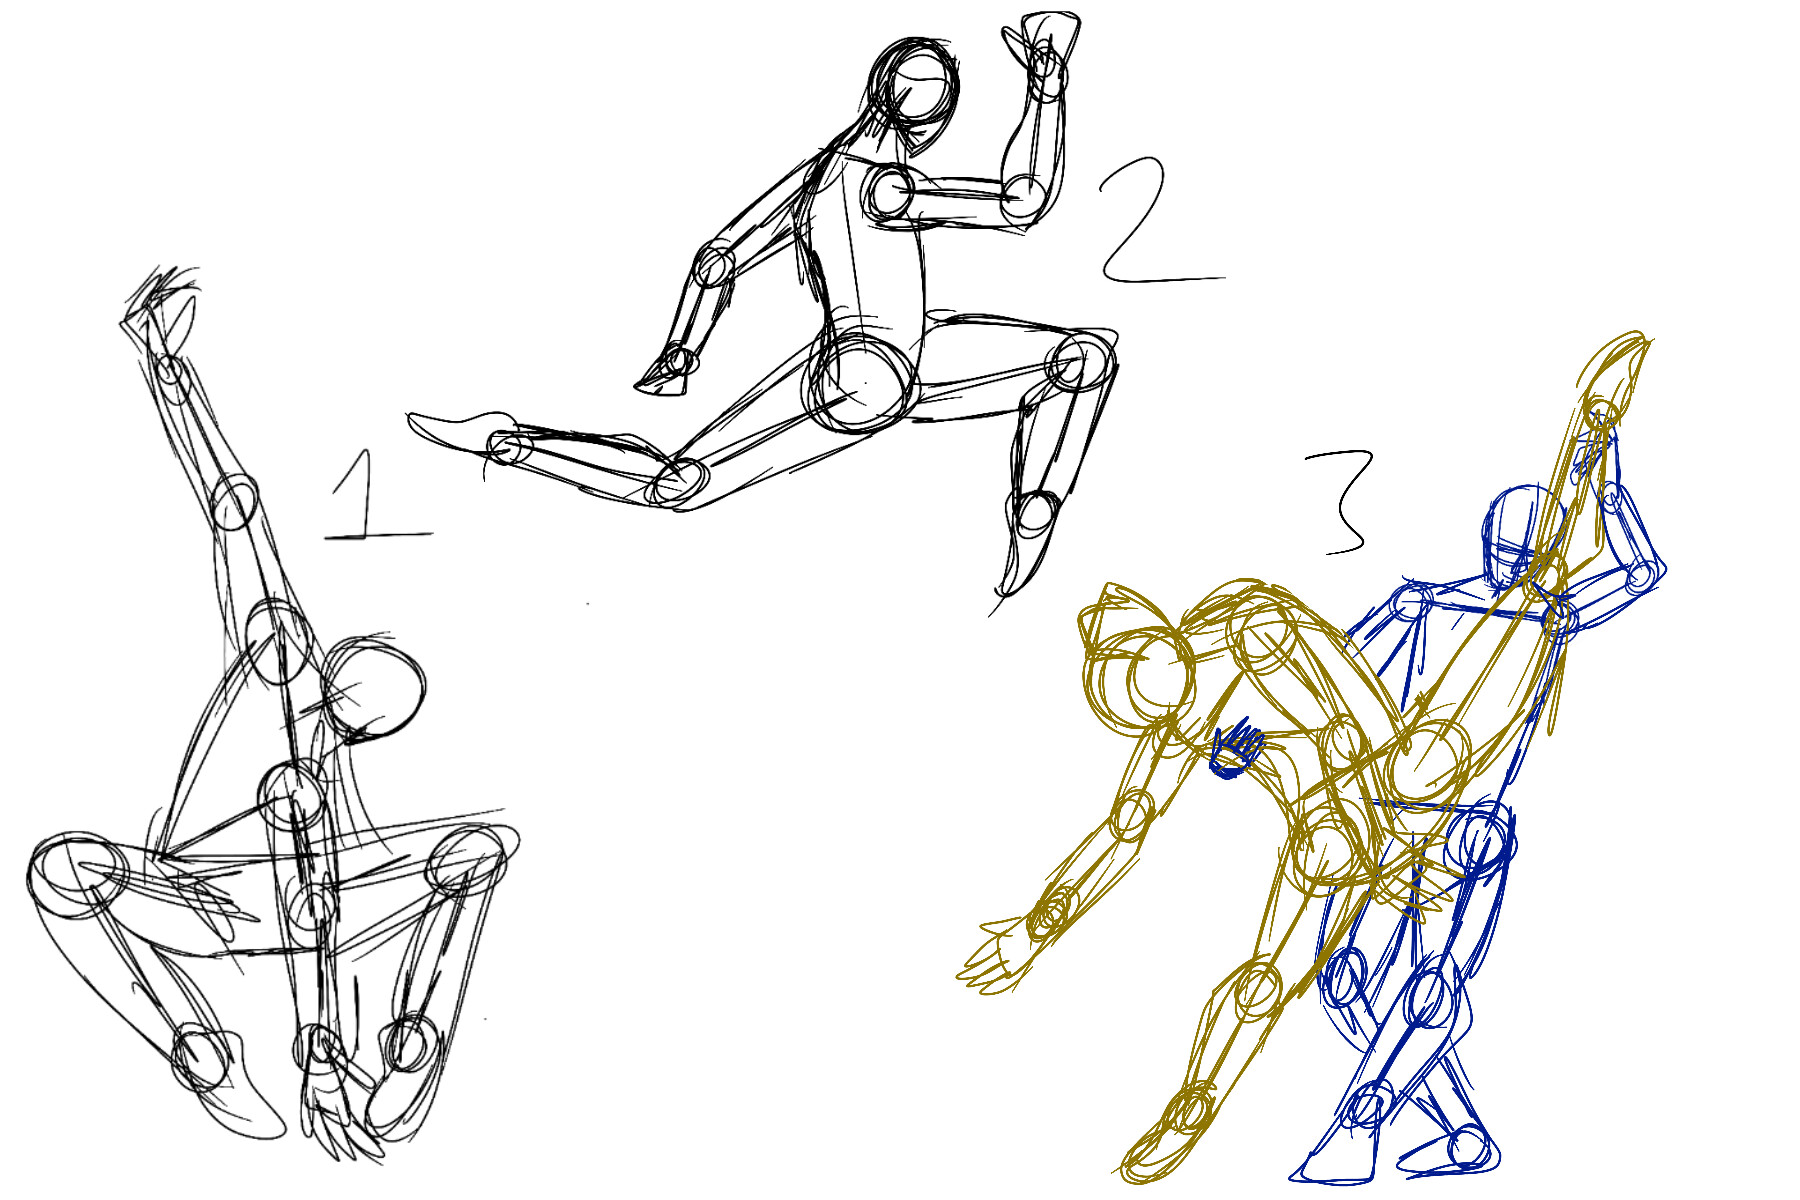 ArtStation - Figure Sketch Practice, Dancers 1